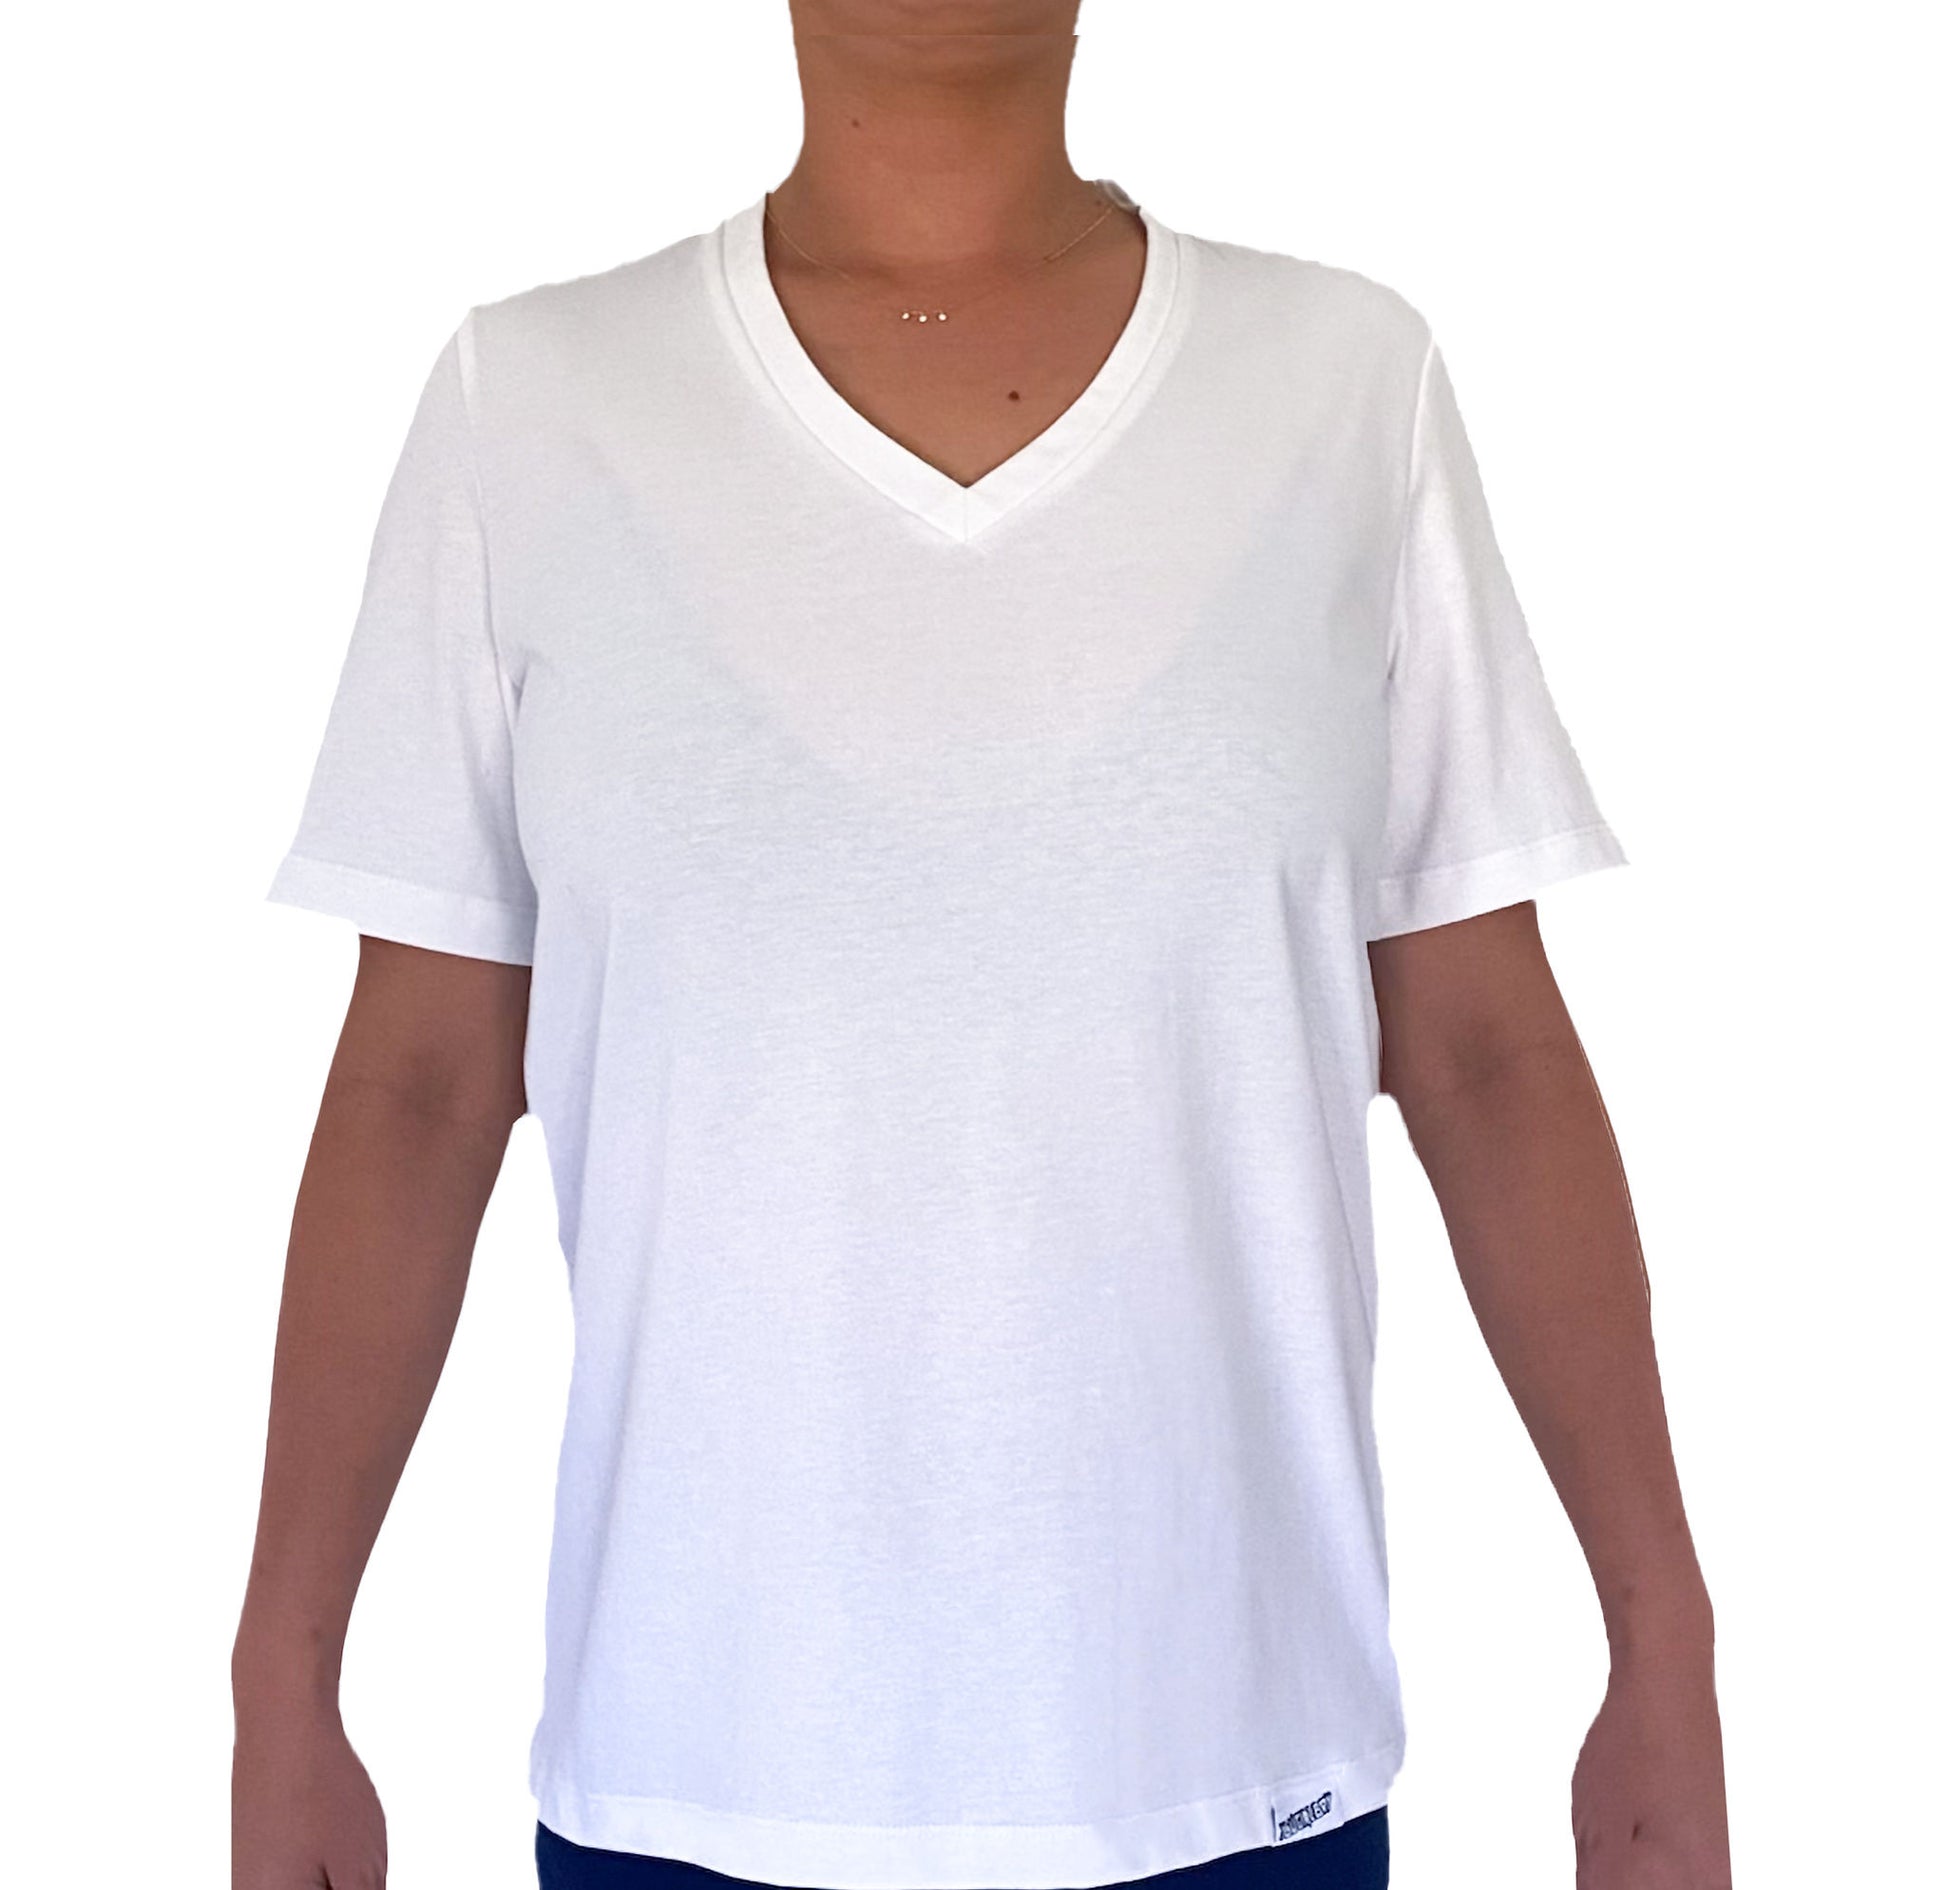 Ethical organic unisex t-shirt White V neck Caution